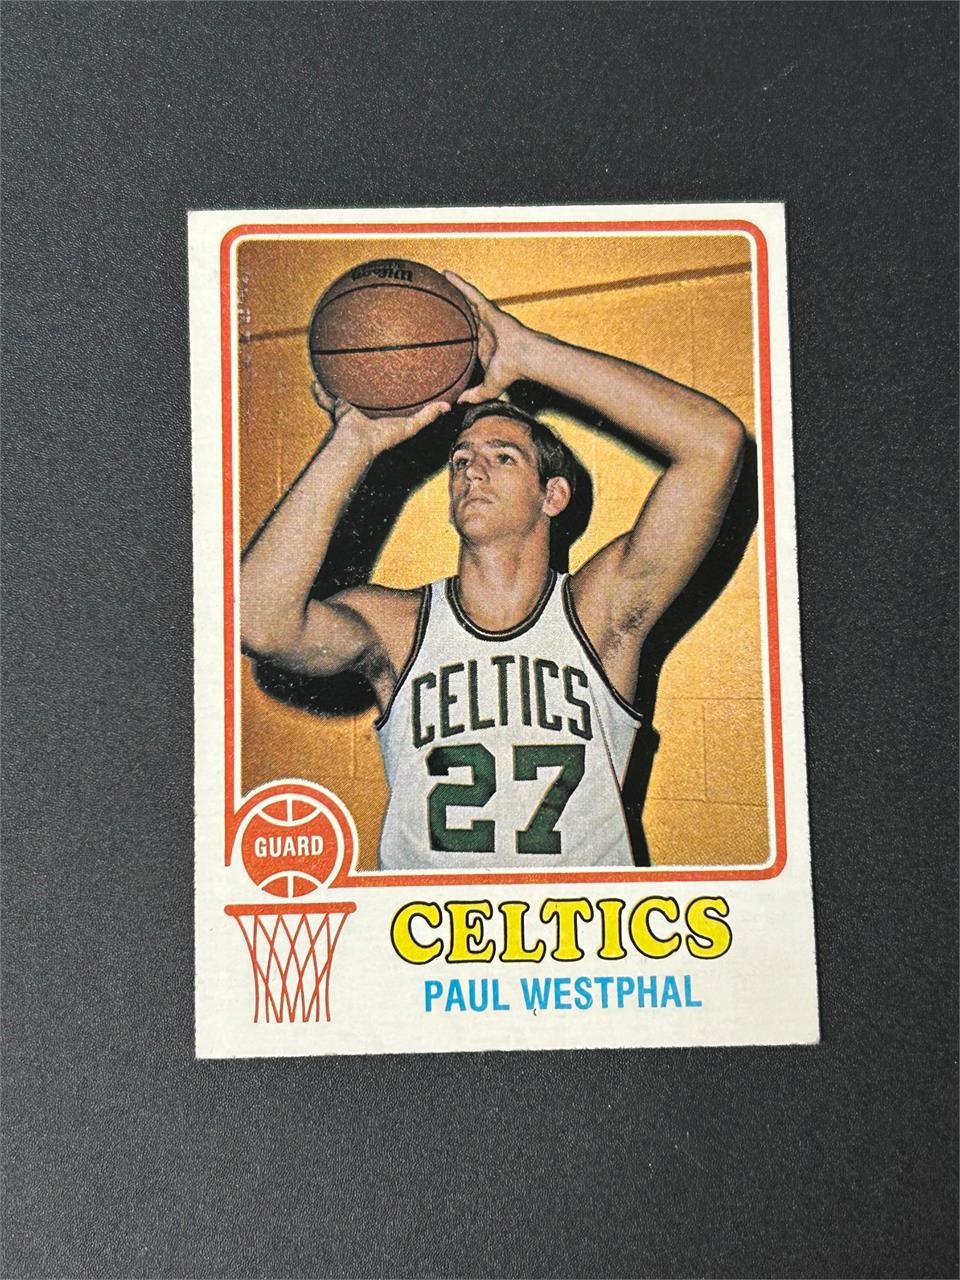 1973 Topps Paul Westphal Rookie Card #126